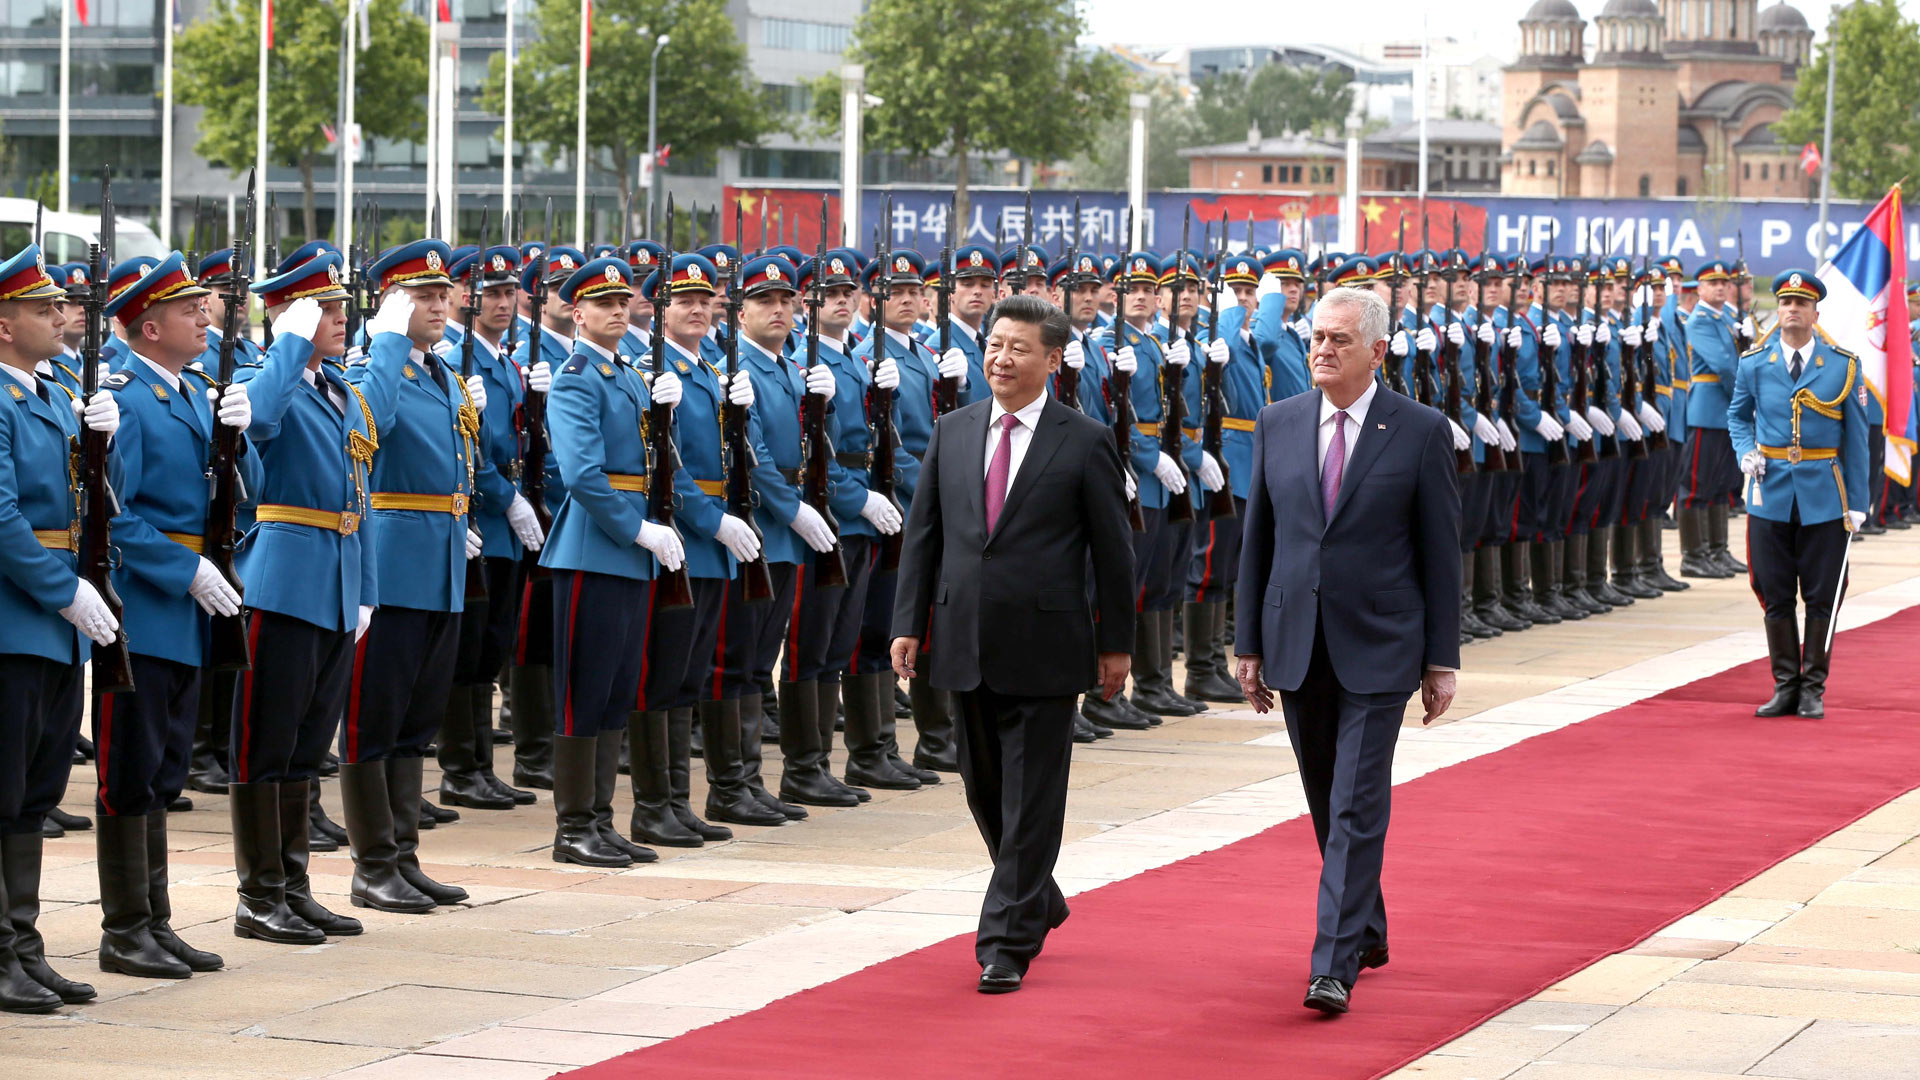 習近平出席塞爾維亞總統尼科利奇舉行的歡迎儀式